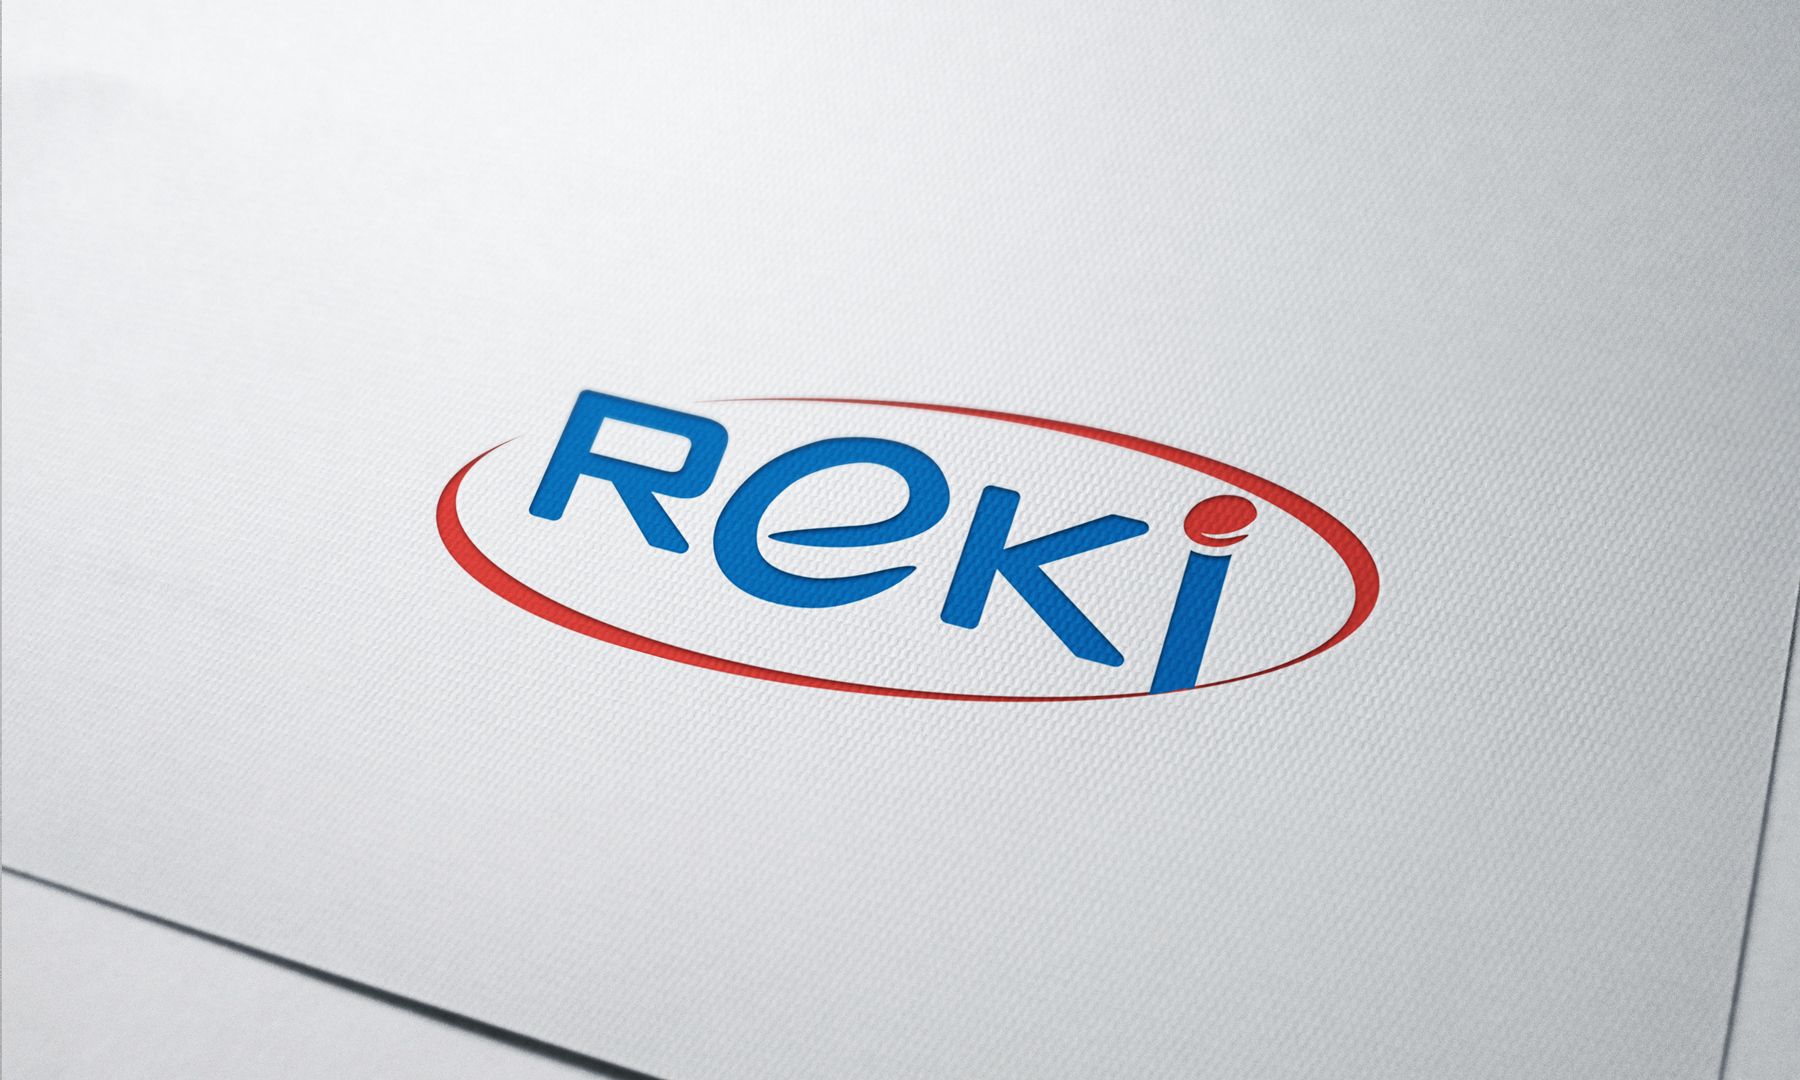 REKI: логотип для СТМ портативной электроники - дизайнер Enrik